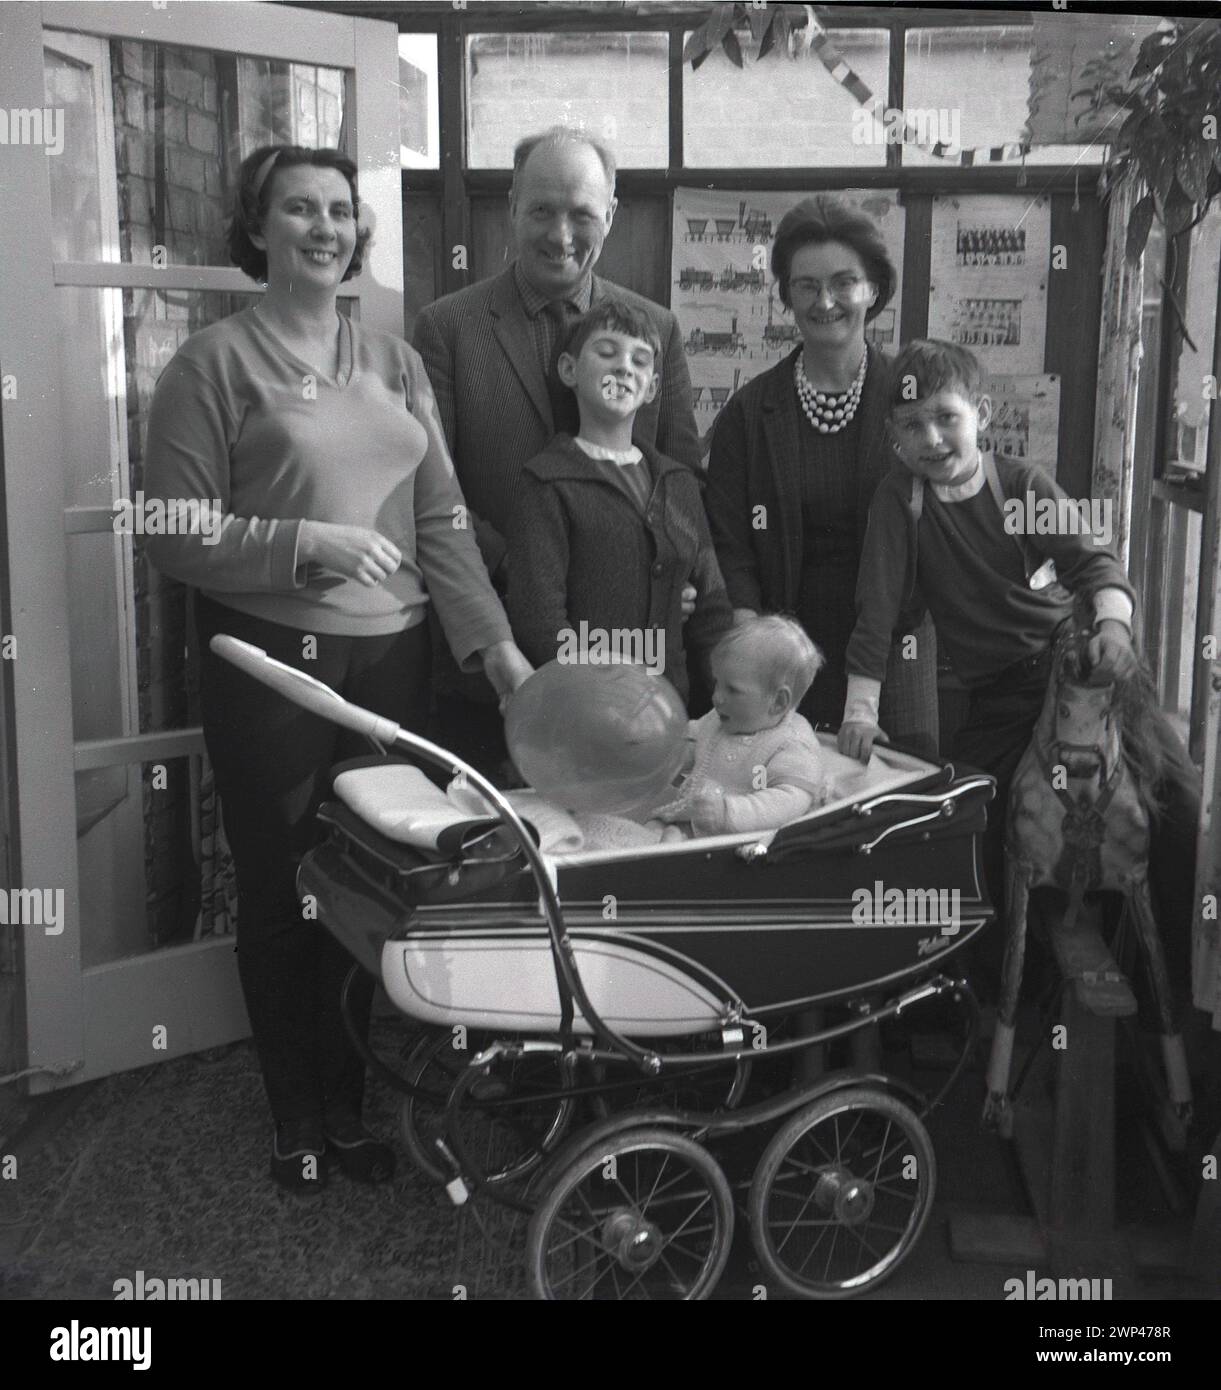 1960s, sonrisas históricas y grandes en todo momento mientras una familia se coloca para una foto dentro de una parte trasera de la casa inclinada con un niño sentado en un cochecito construido por un entrenador sosteniendo un globo, Inglaterra, Reino Unido. Cumpleaños en el techo. Foto de stock